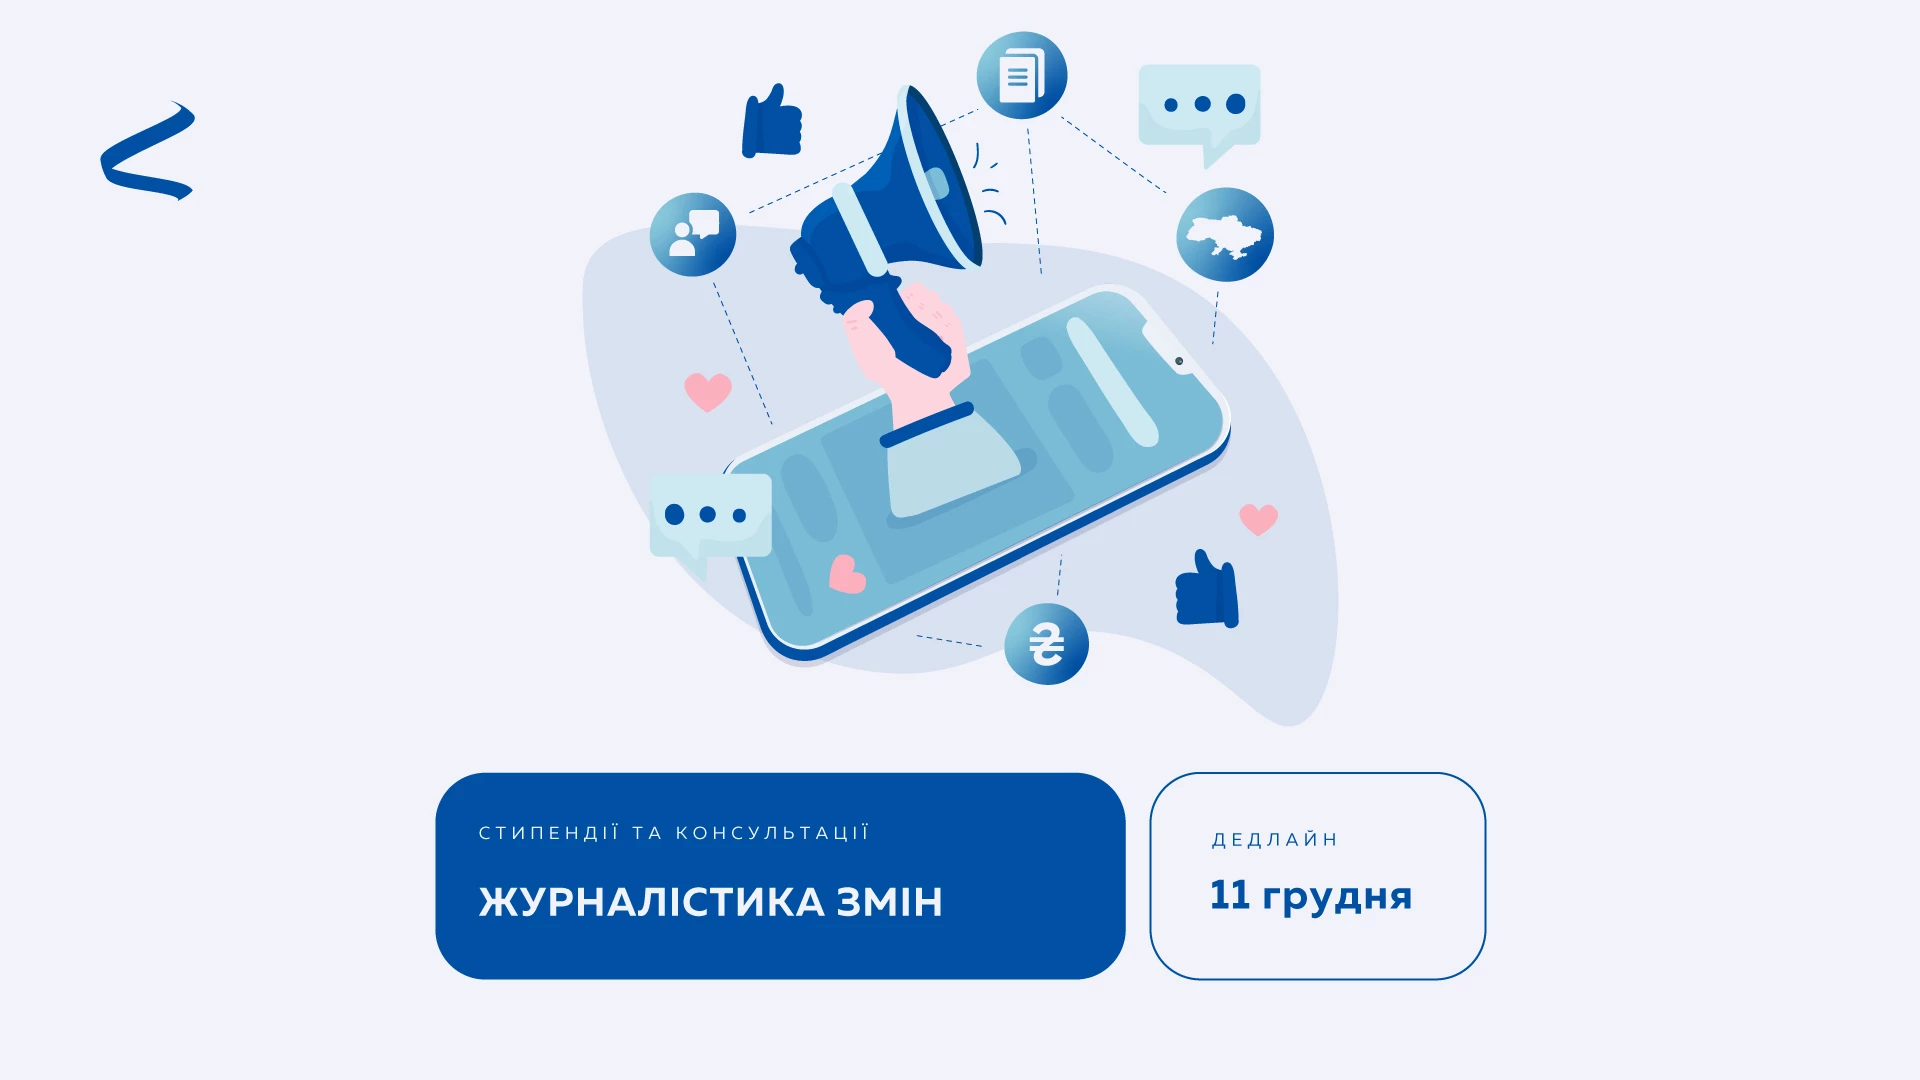 До 11 грудня — реєстрація на програму «Журналістика змін» від «Інтерньюз-Україна»